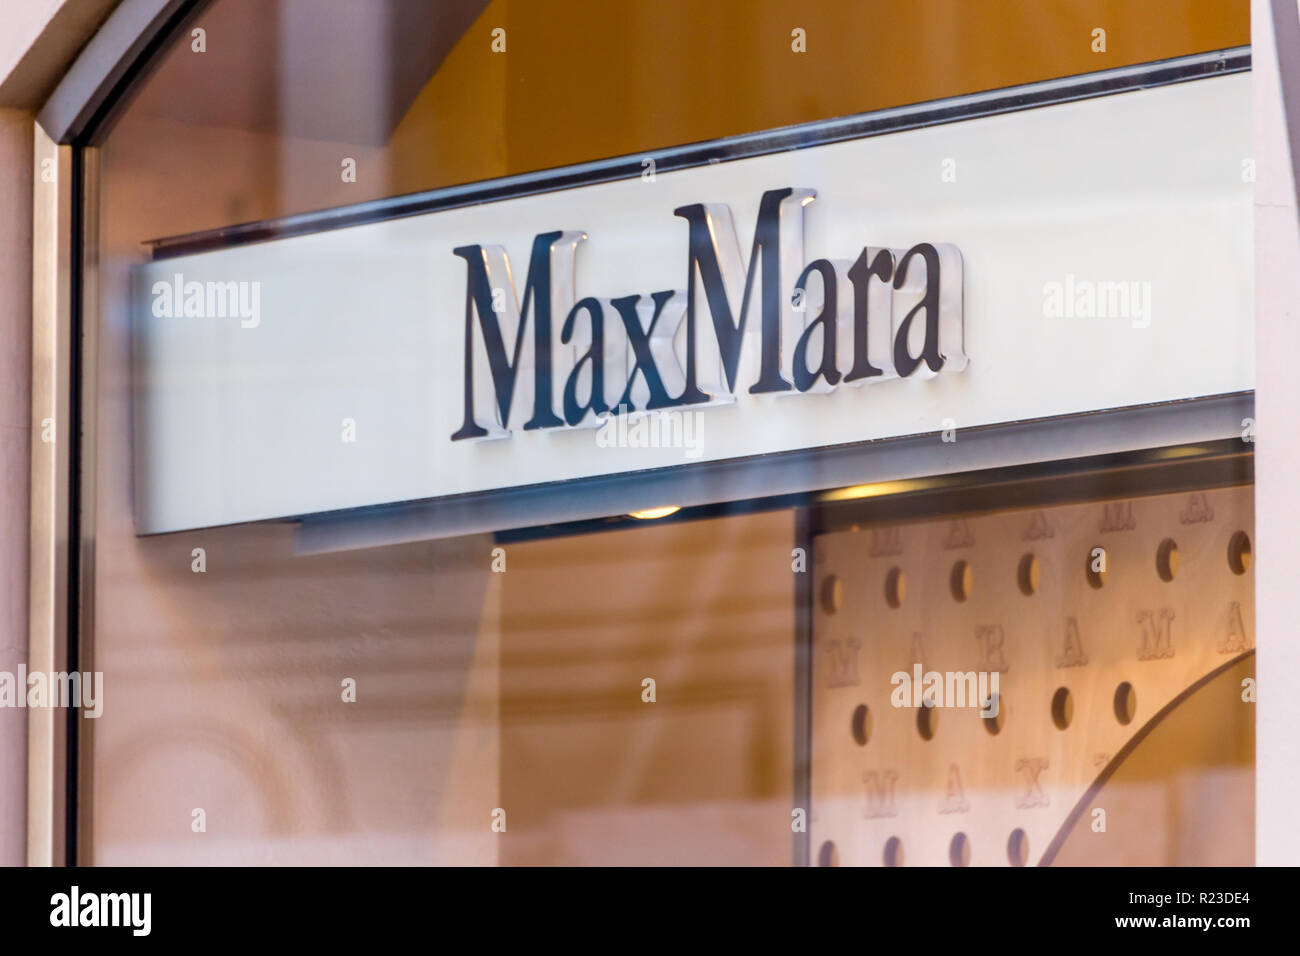 RAVENNA, Italia - 12 settembre 2018: la luce è illuminante il logo MaxMara sulla vetrina Foto Stock